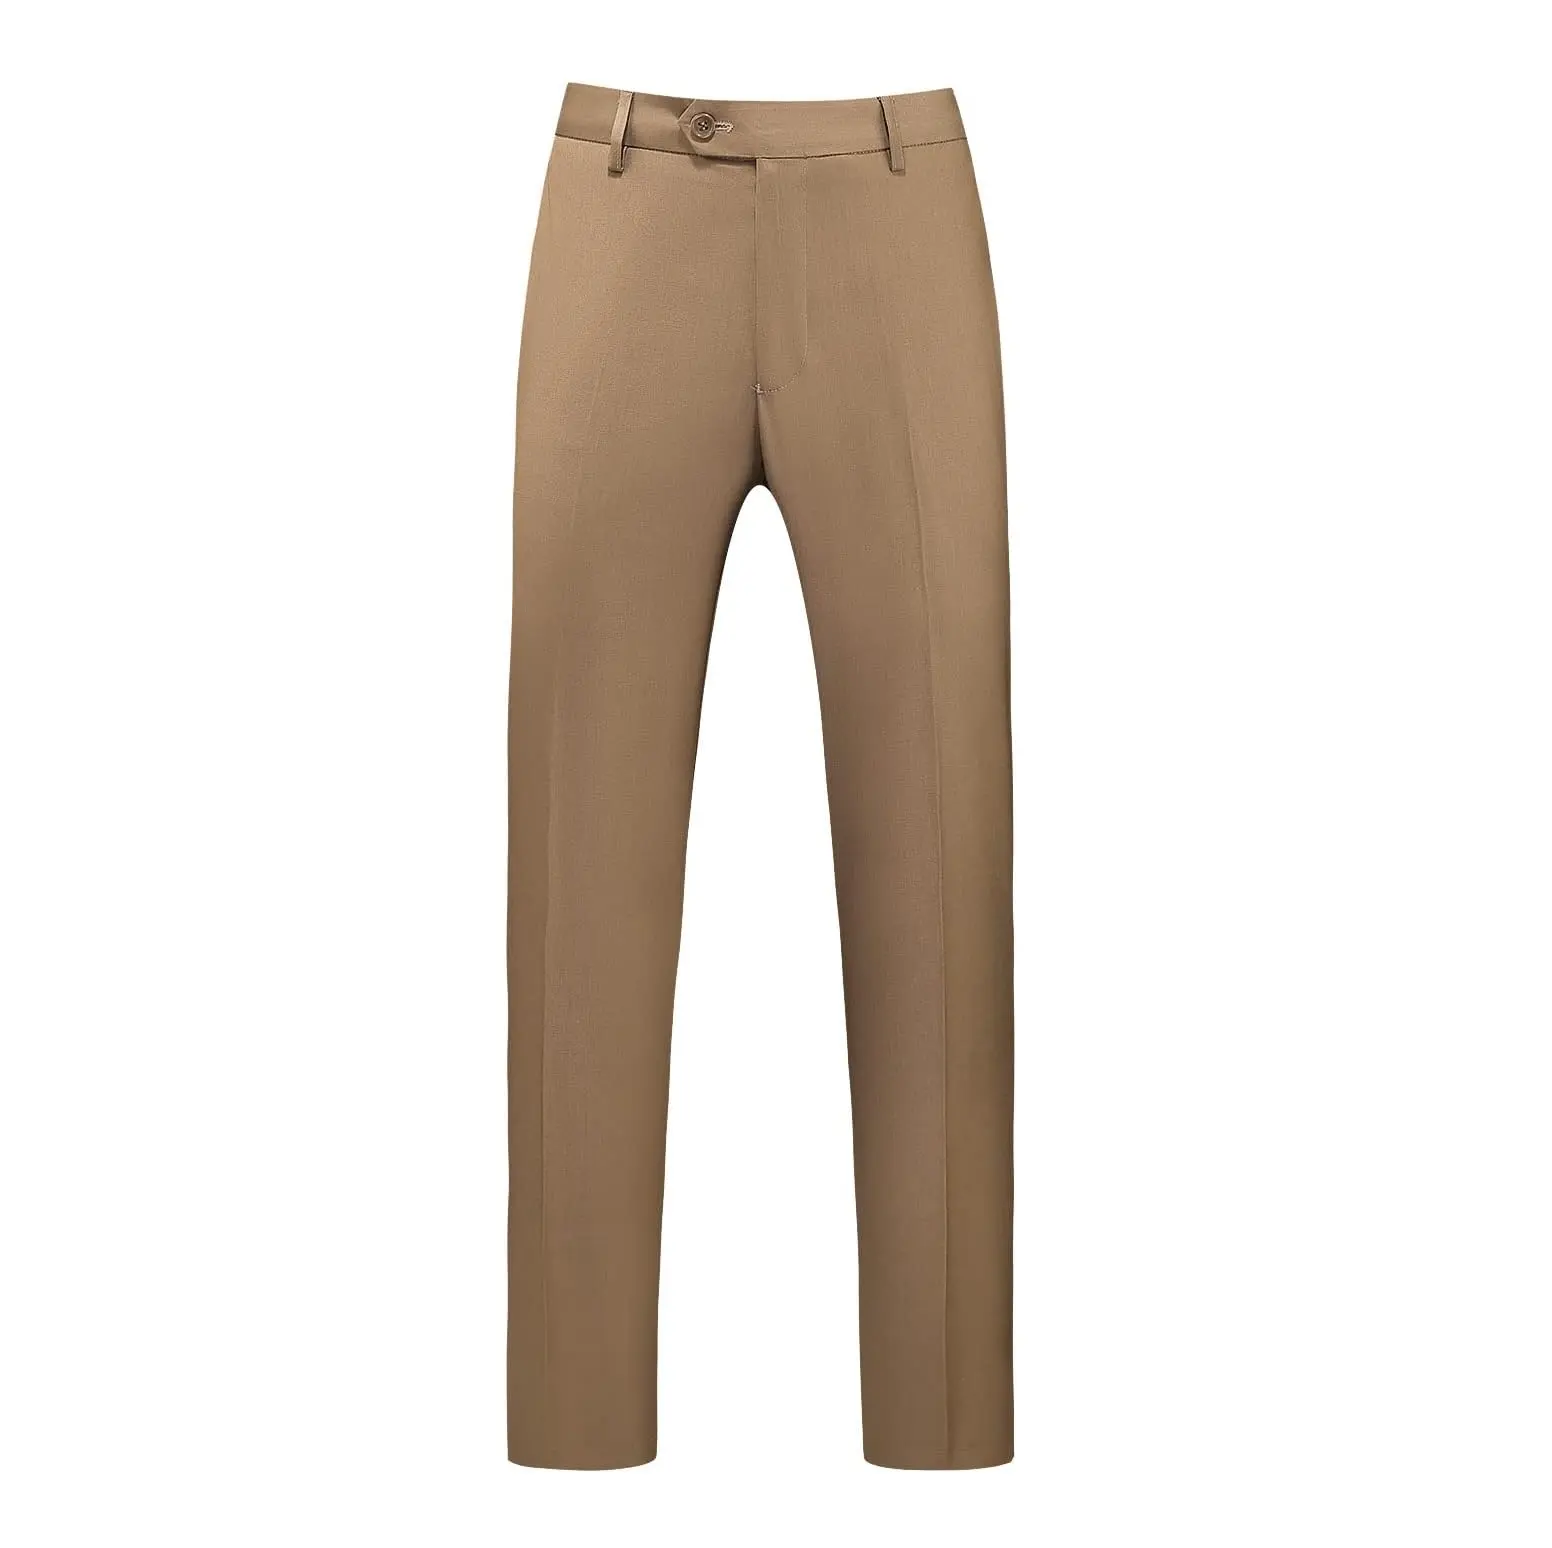 Vêtements d'entreprise de couleur kaki de qualité supérieure à la mode Pantalons formels pour hommes disponibles au meilleur prix